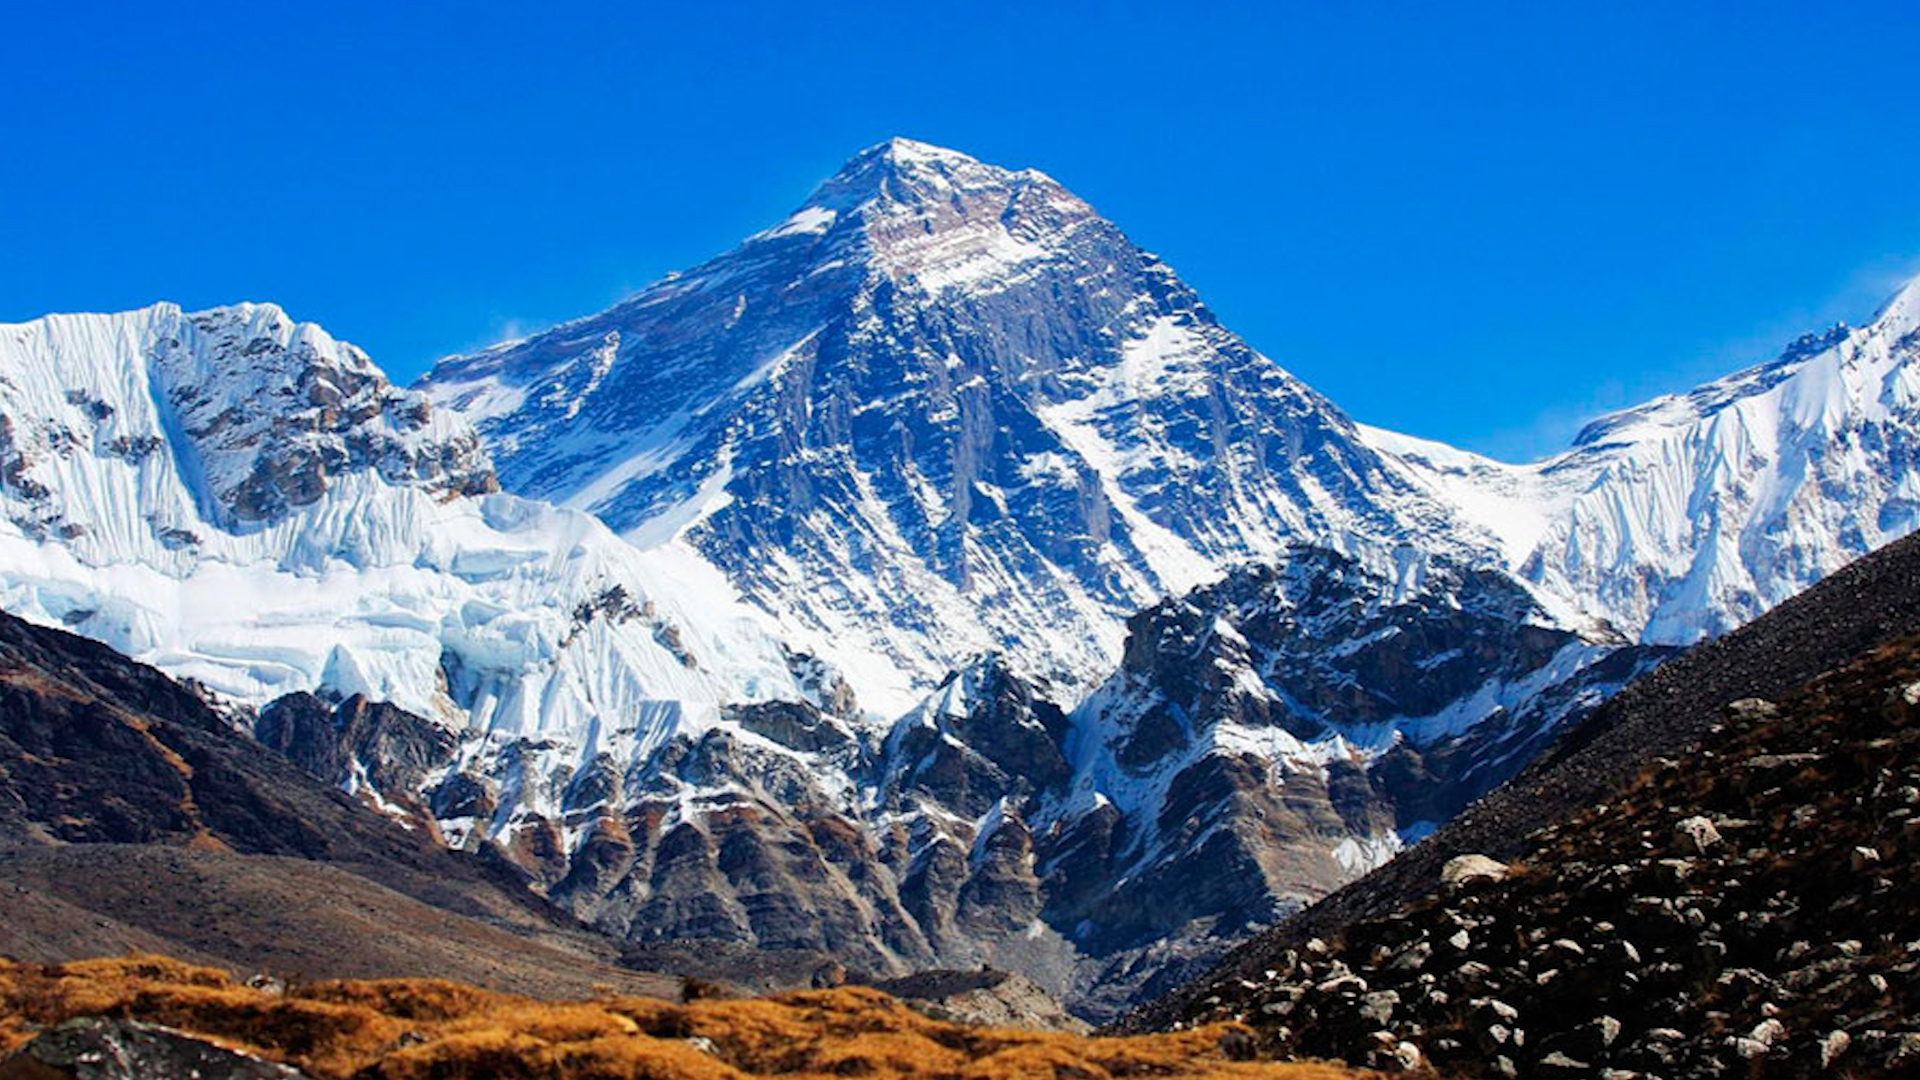 Где находится самая высокая гора эверест